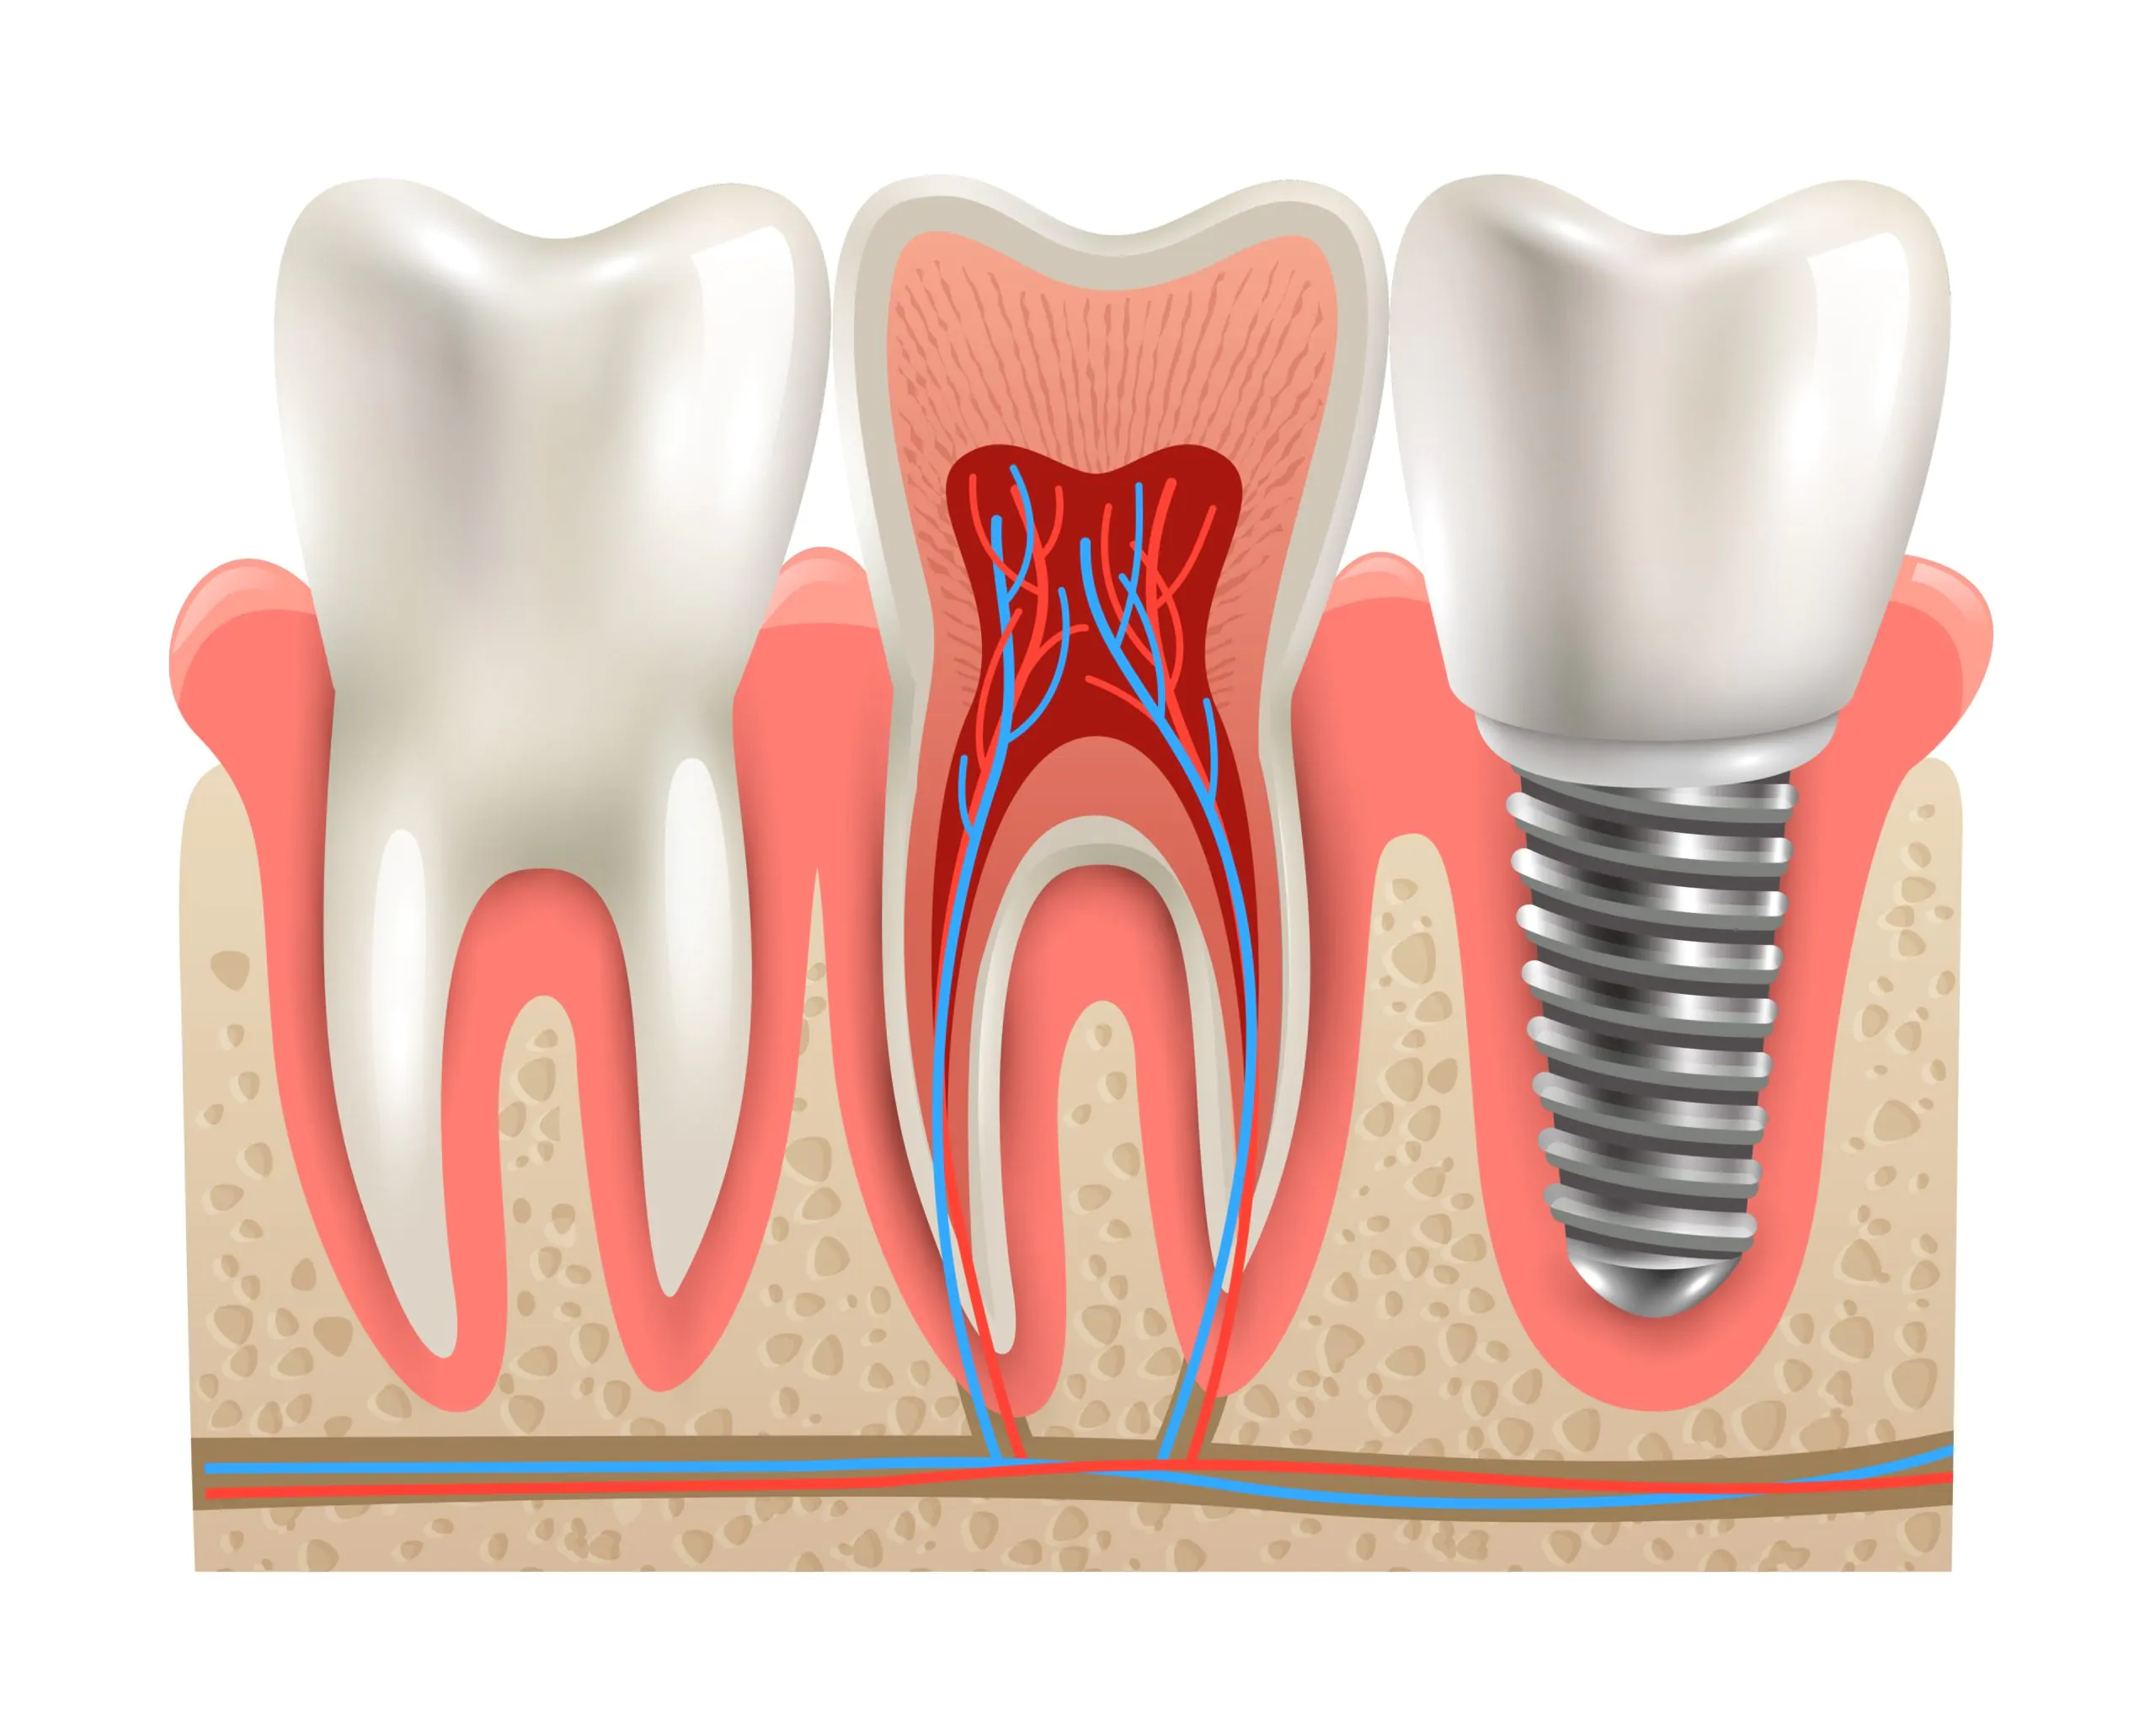 Зубные мосты или импланты – плюсы и минусы современного протезирования